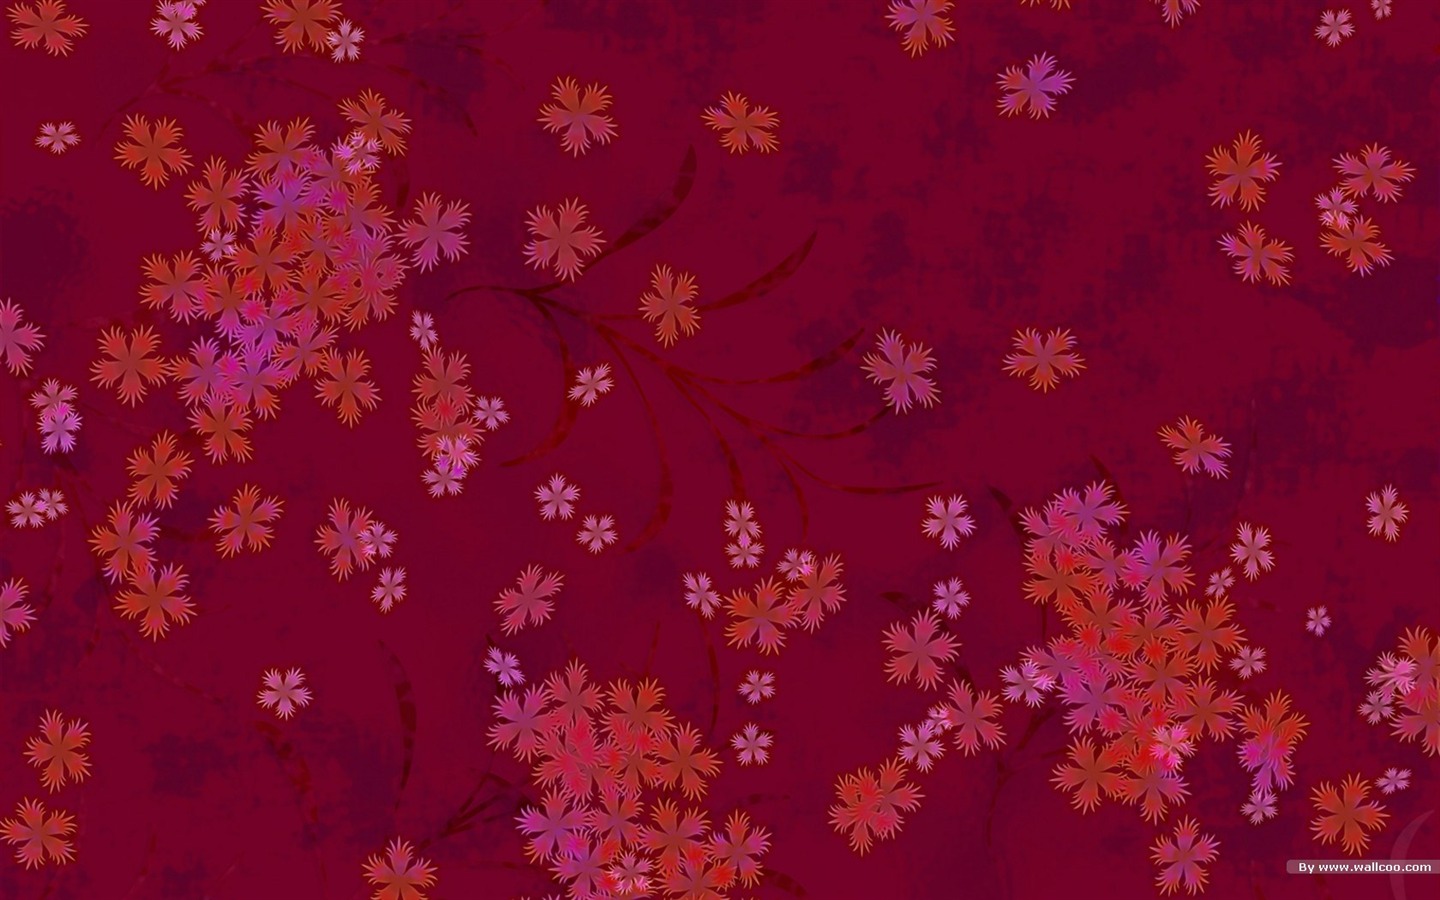 일본 스타일의 벽지 패턴 및 색상 #19 - 1440x900